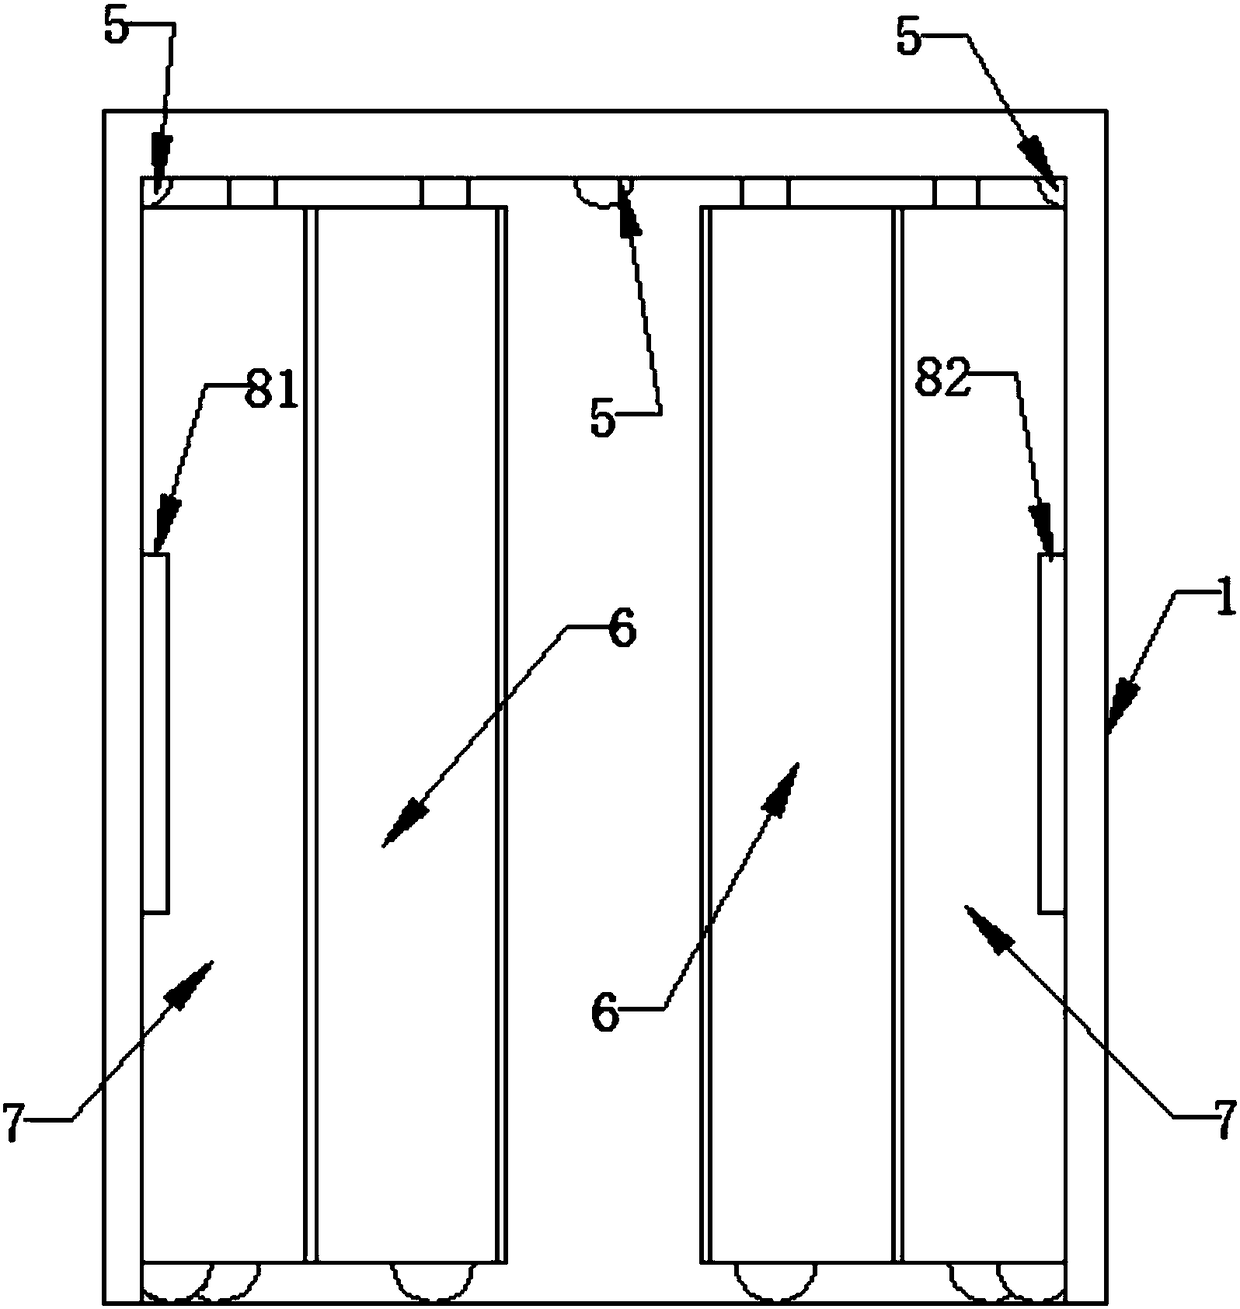 Inertia control system for door machine of multi-door elevator